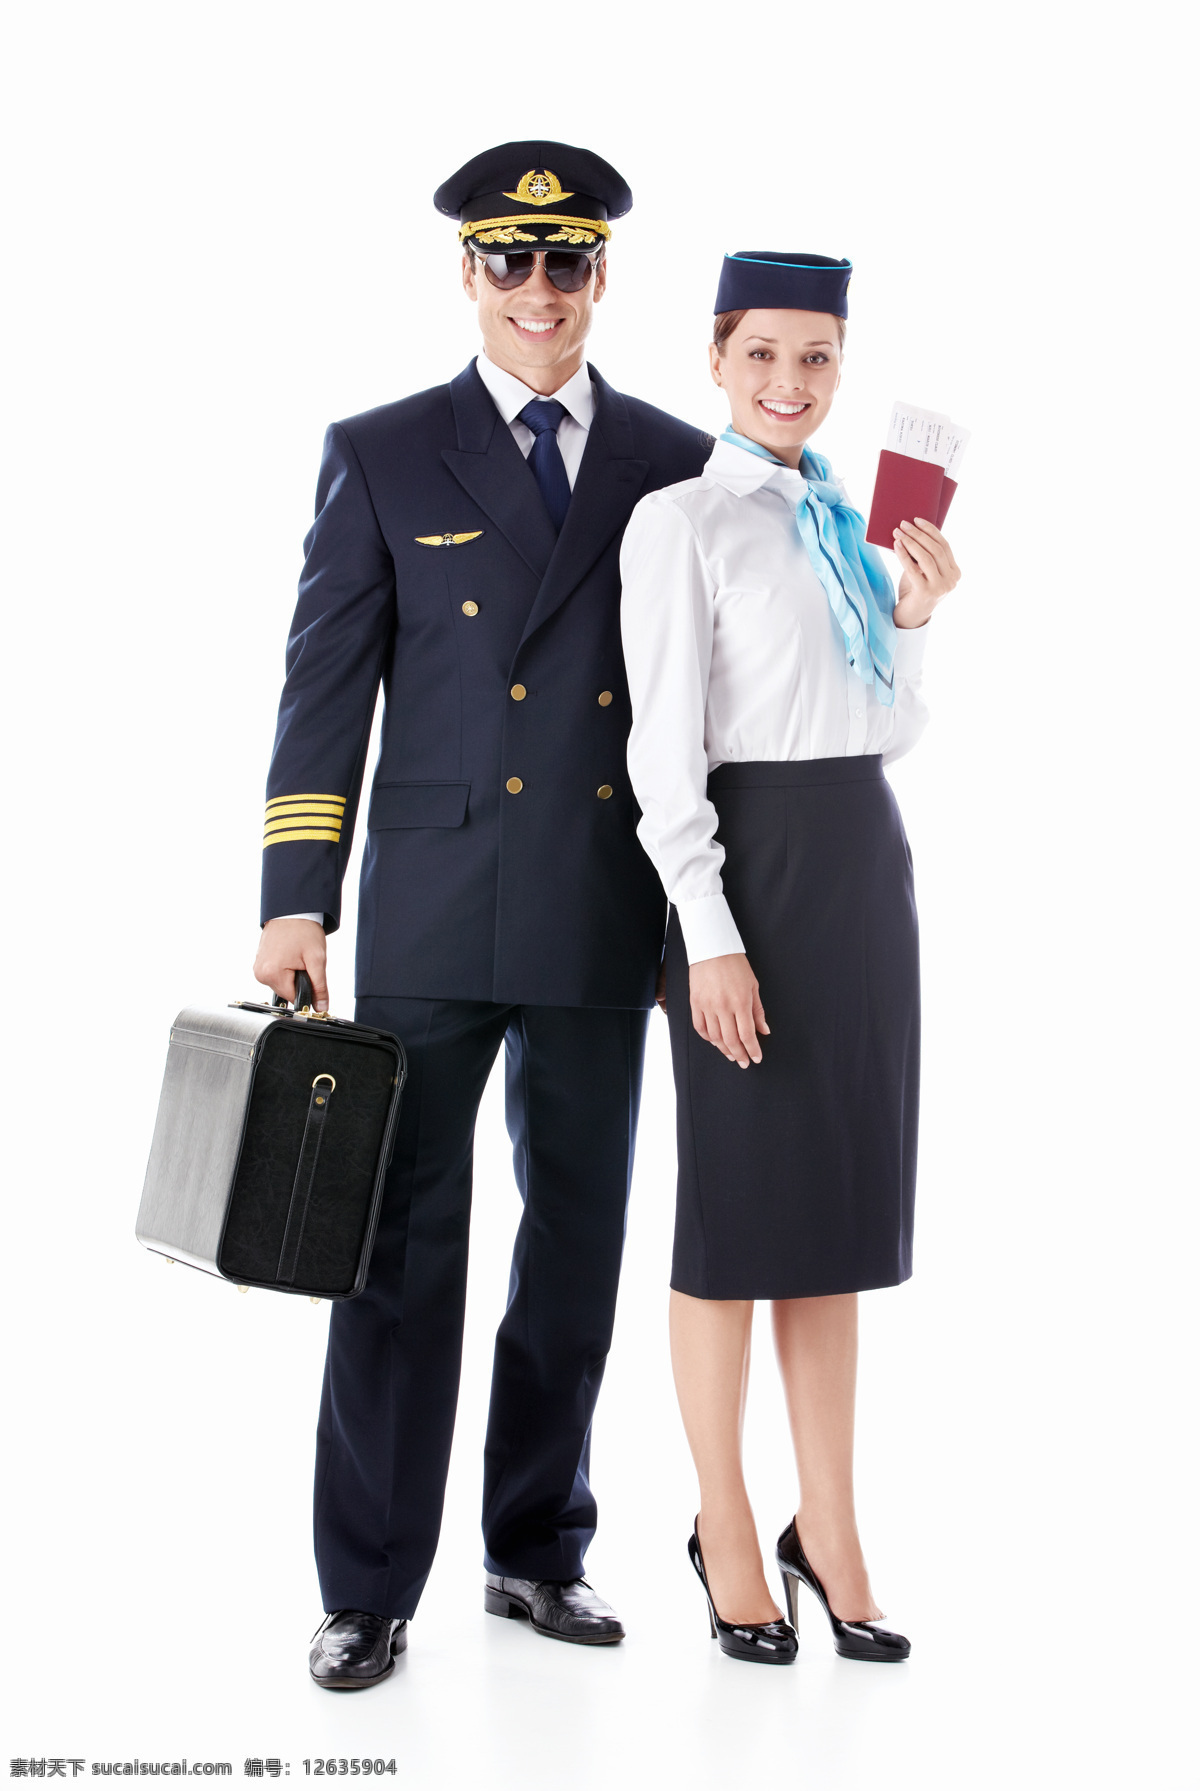 空姐 飞行员 空姐和飞行员 航空 美女 运输 航空飞机 旅行 驾驶飞机 旅行箱 商务人士 人物图片